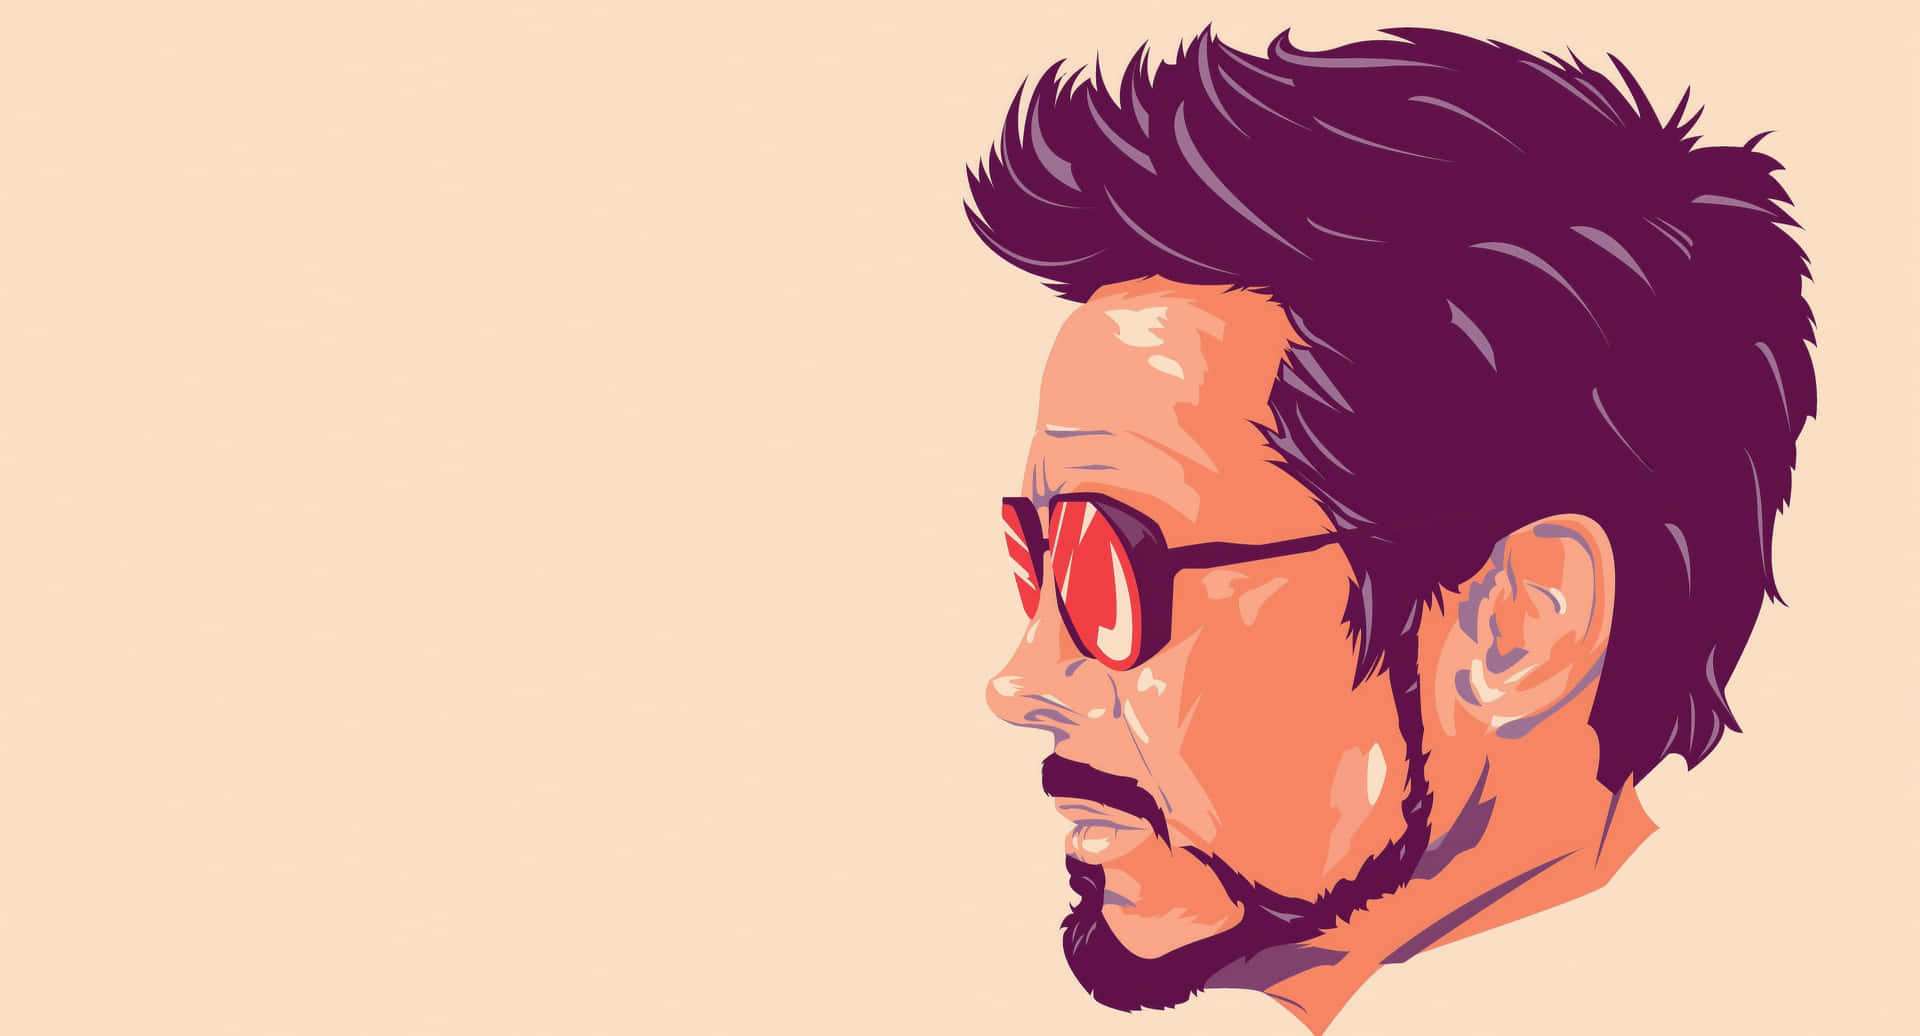 Stylized Tony Stark Profile Illustration Background